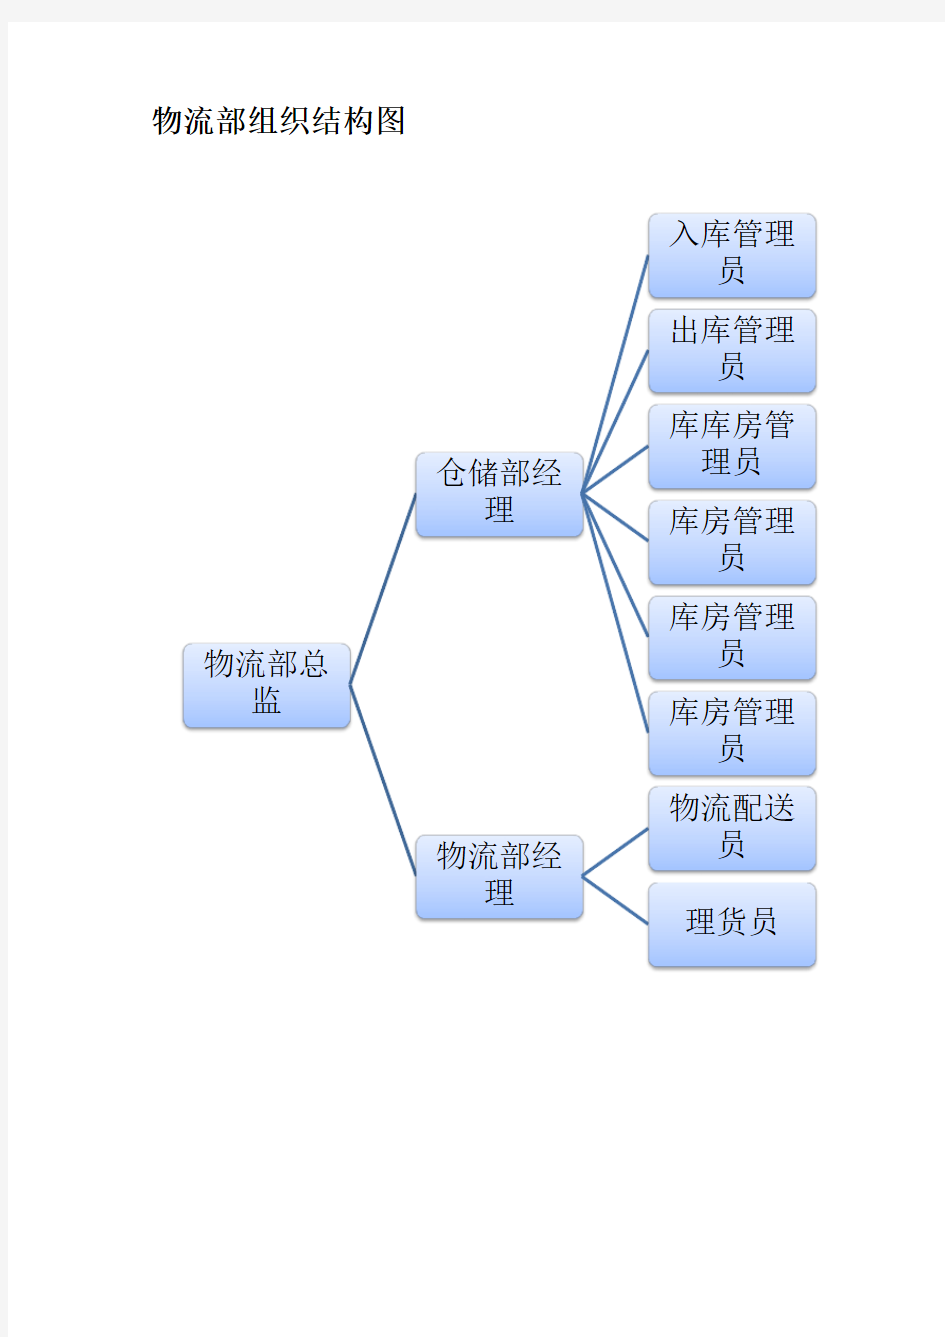 物流部组织架构流程图